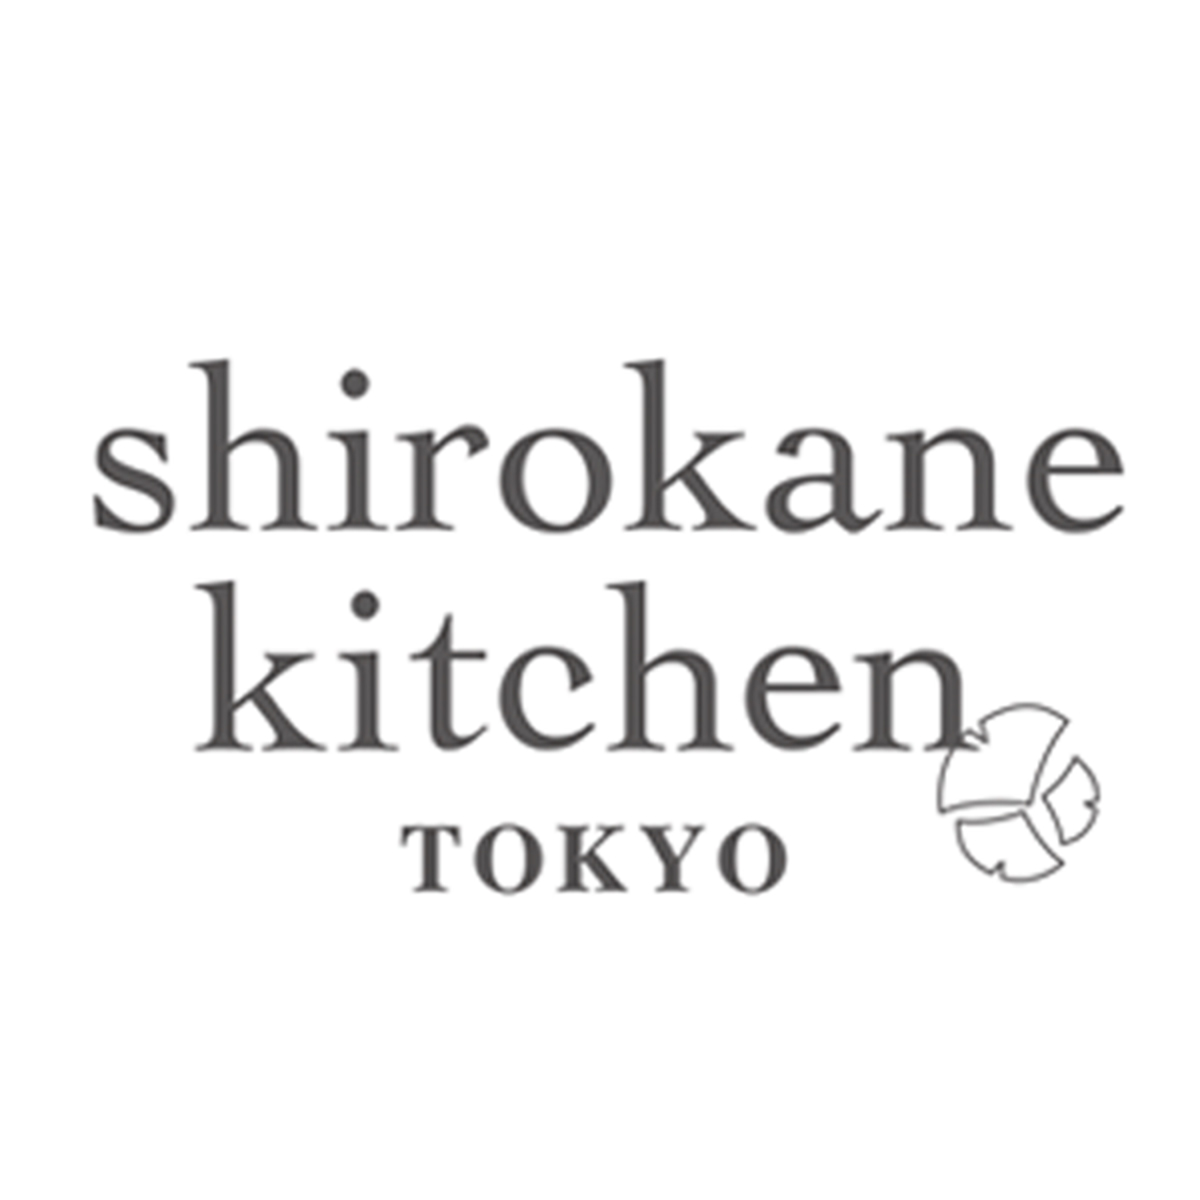 shirokane kitchen TOKYO